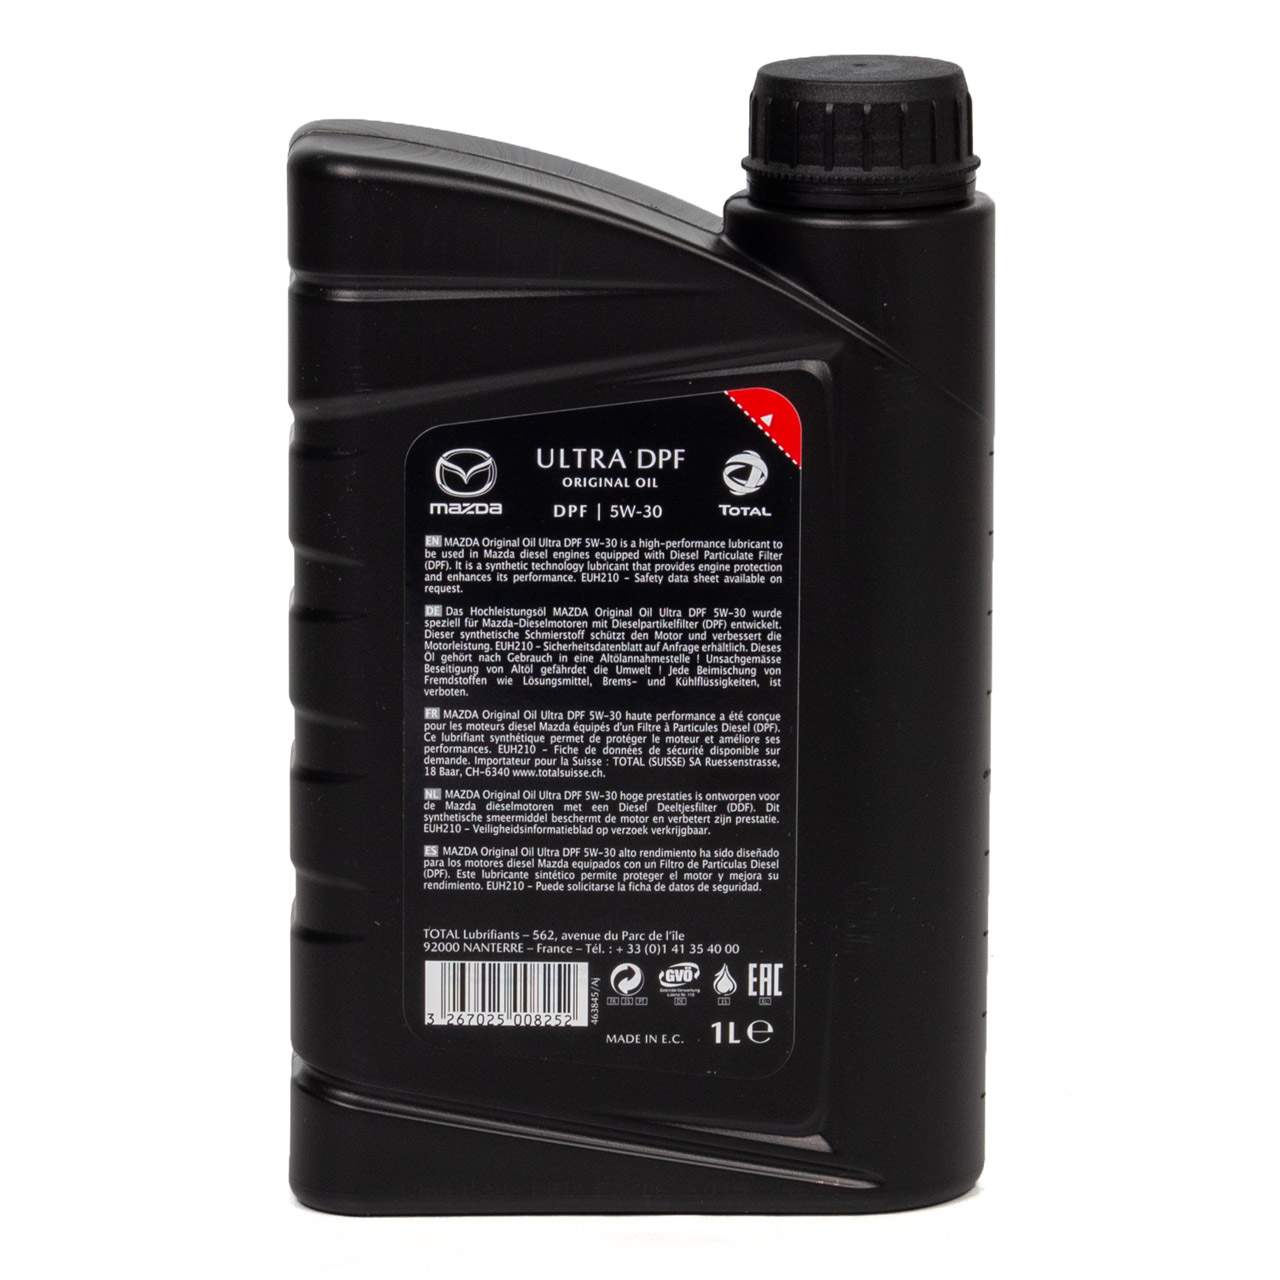 Olio mazda Ultra Dpf 5W30 sintetico (confezione da 1 litro)